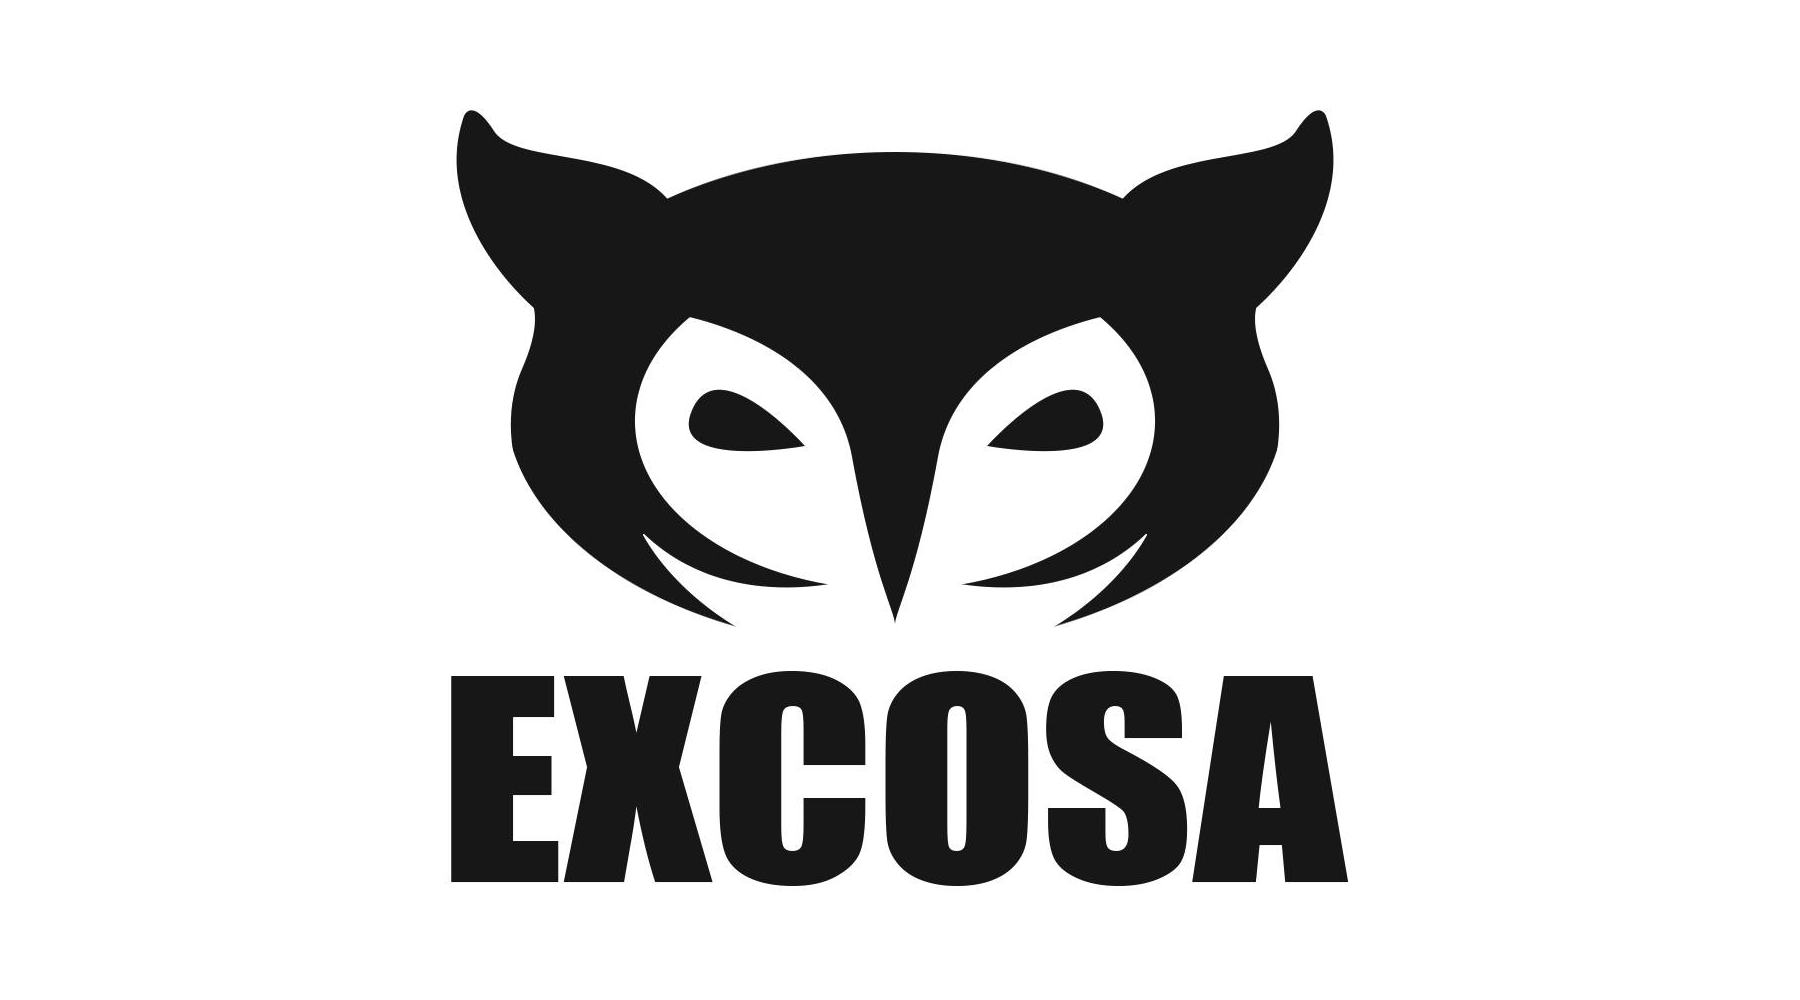 excosa